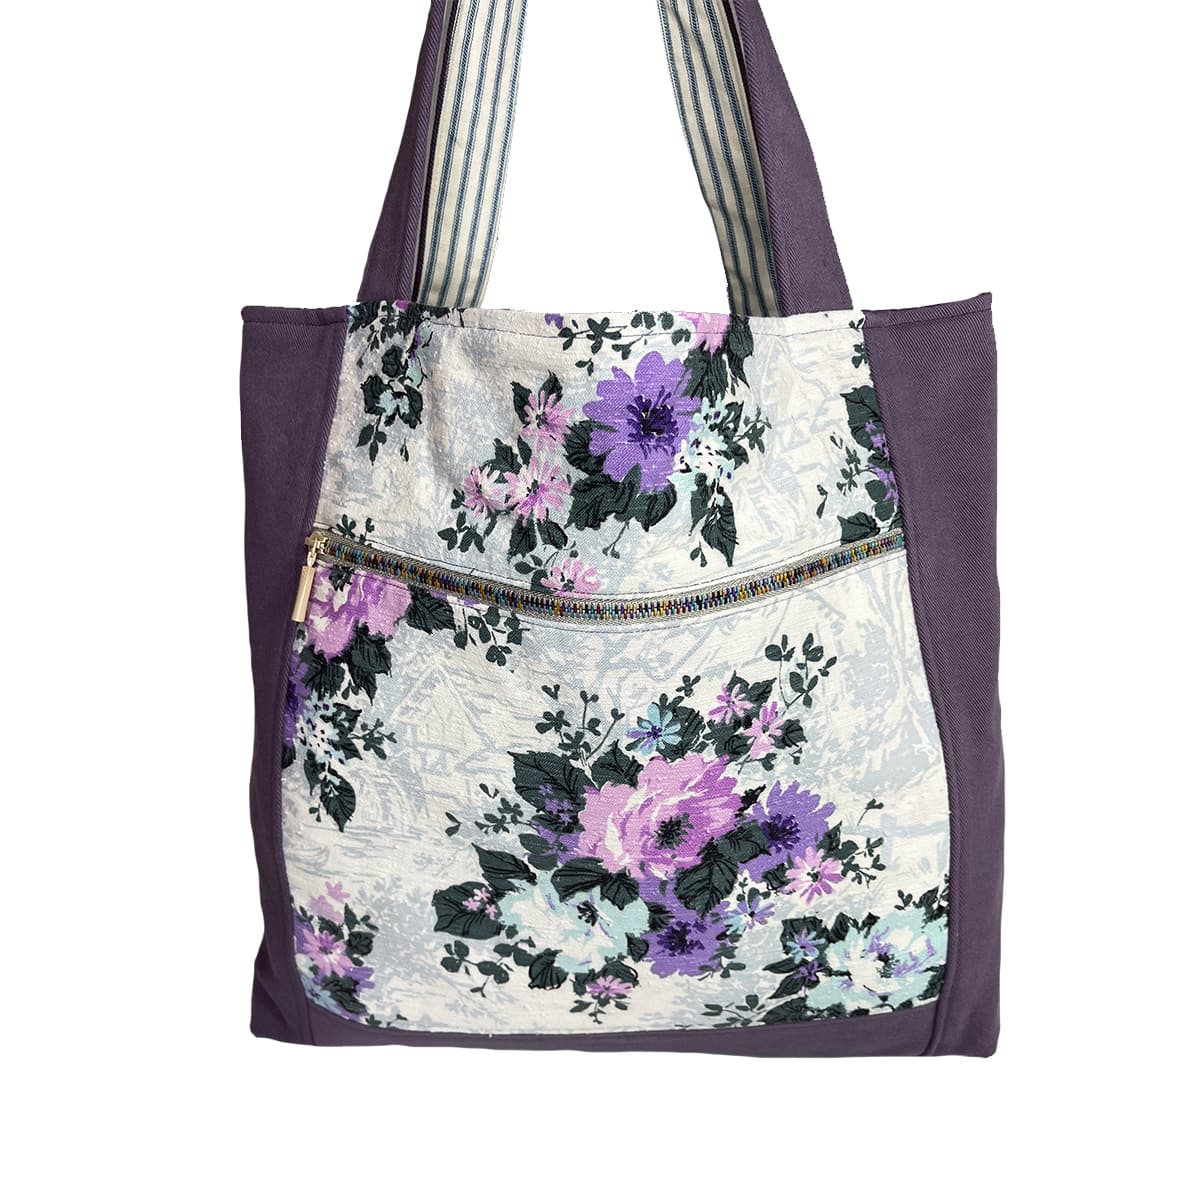 Up Island Bag – Wildflowers in Purple